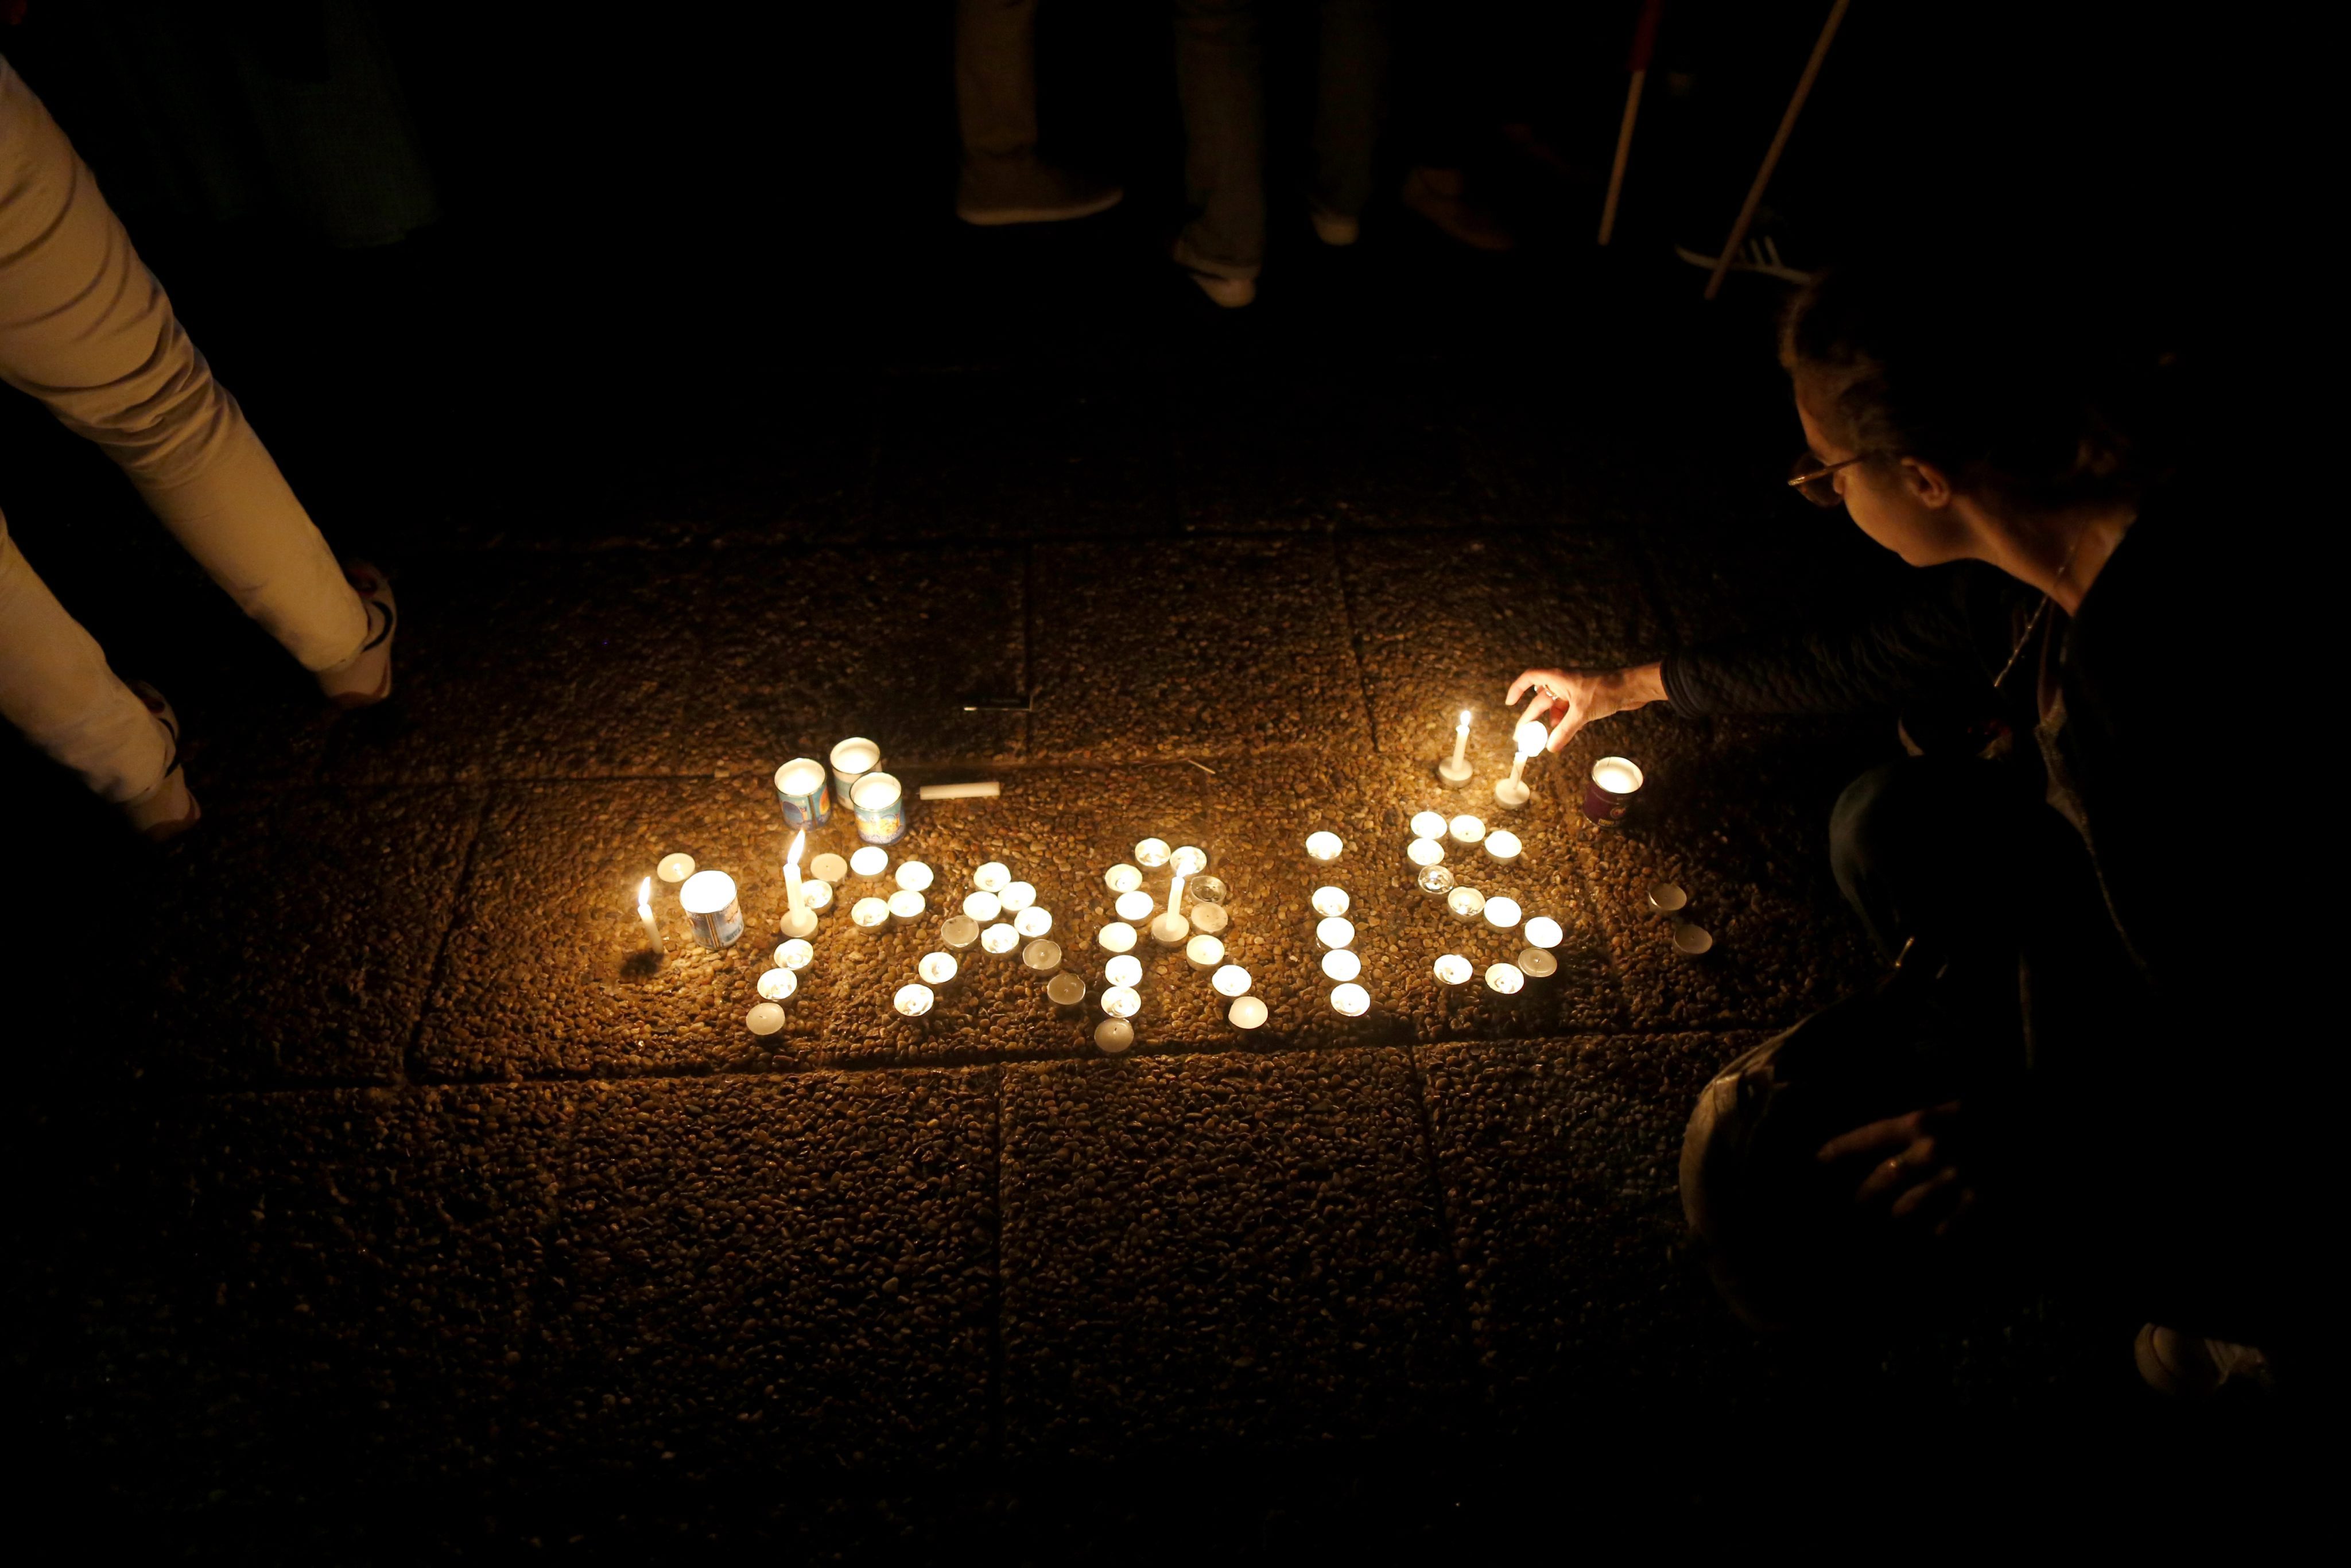 Ταυτοποιήθηκε ένας από τους δράστες στο Παρίσι, «Γάλλος γνωστός στις Αρχές»